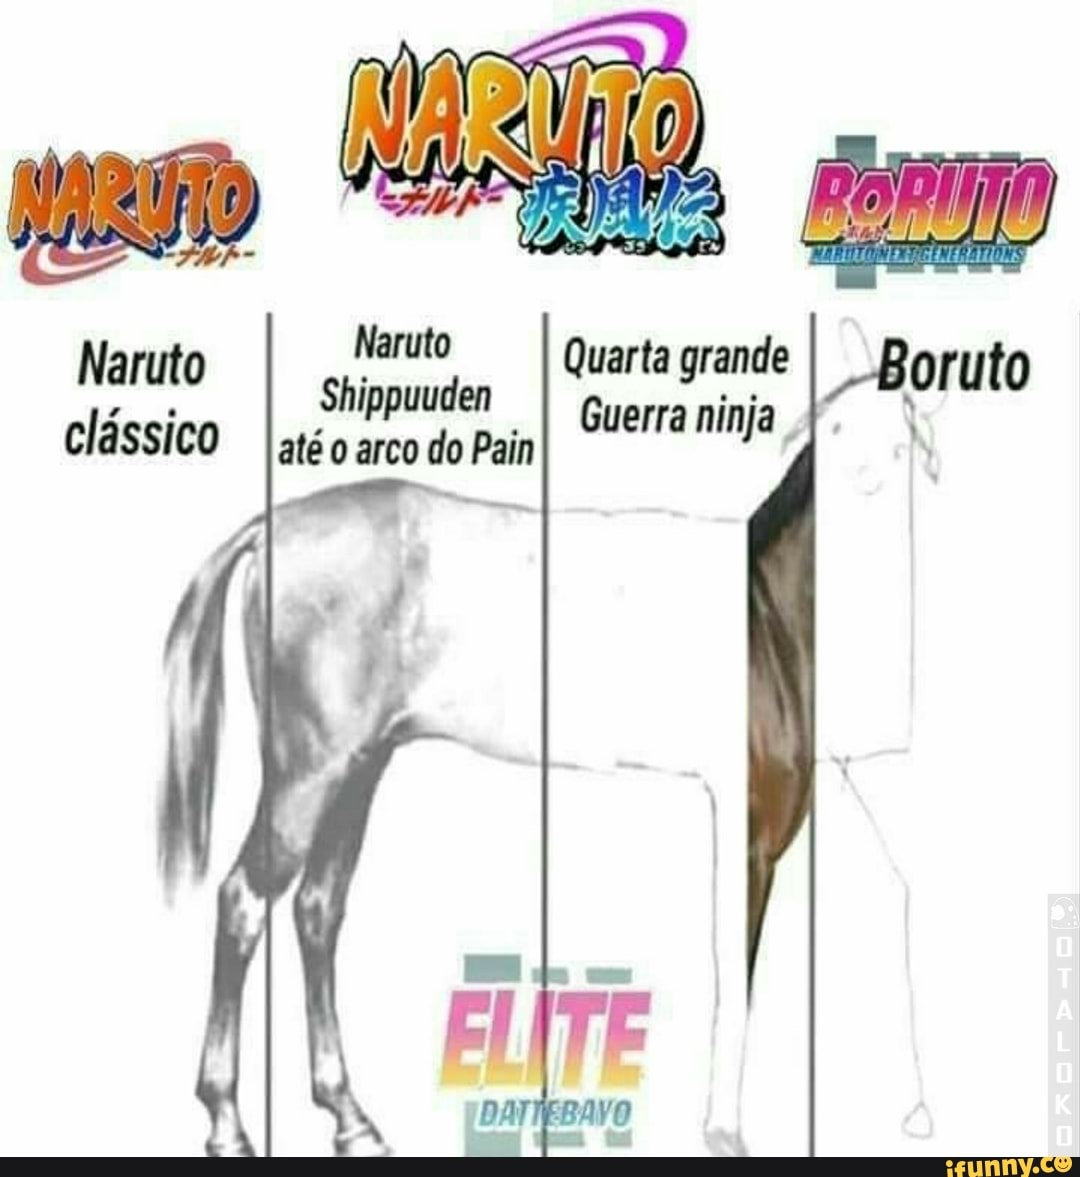 IMAGENS NARUTO CLÁSSICO E NARUTO SHIPPUUDEN